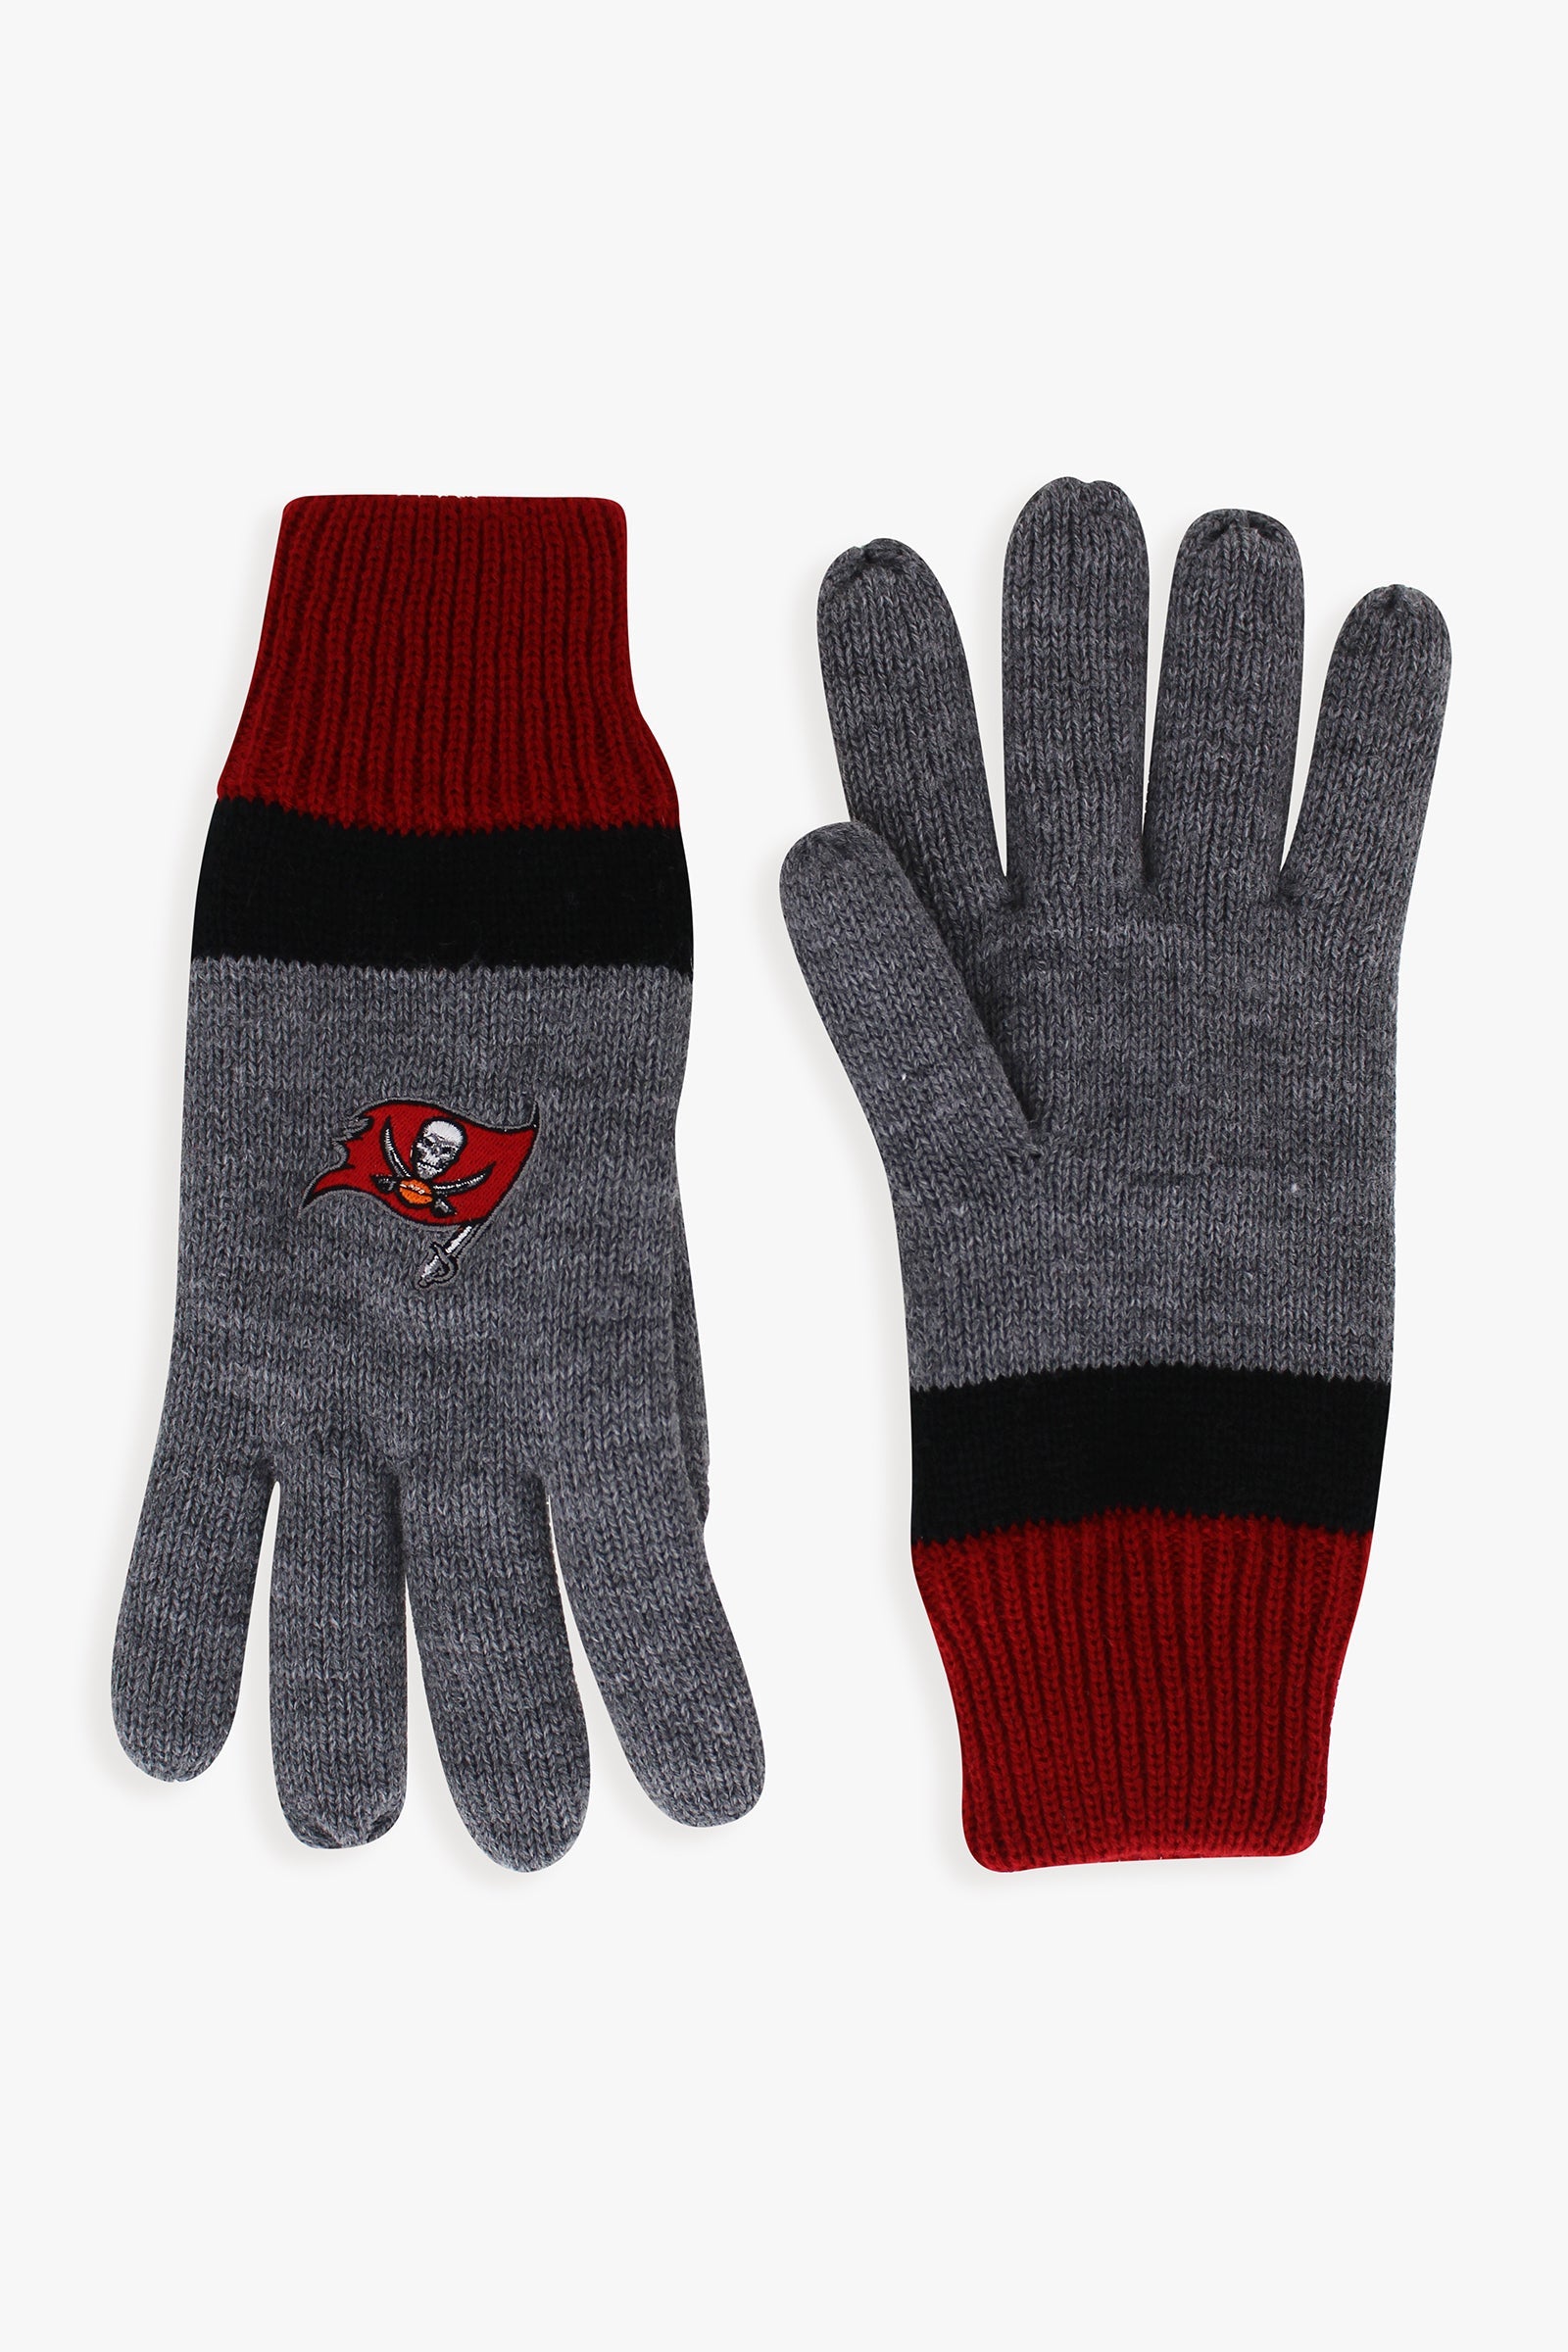 Gertex NFL Men's Lined Winter Cold Weather Gloves